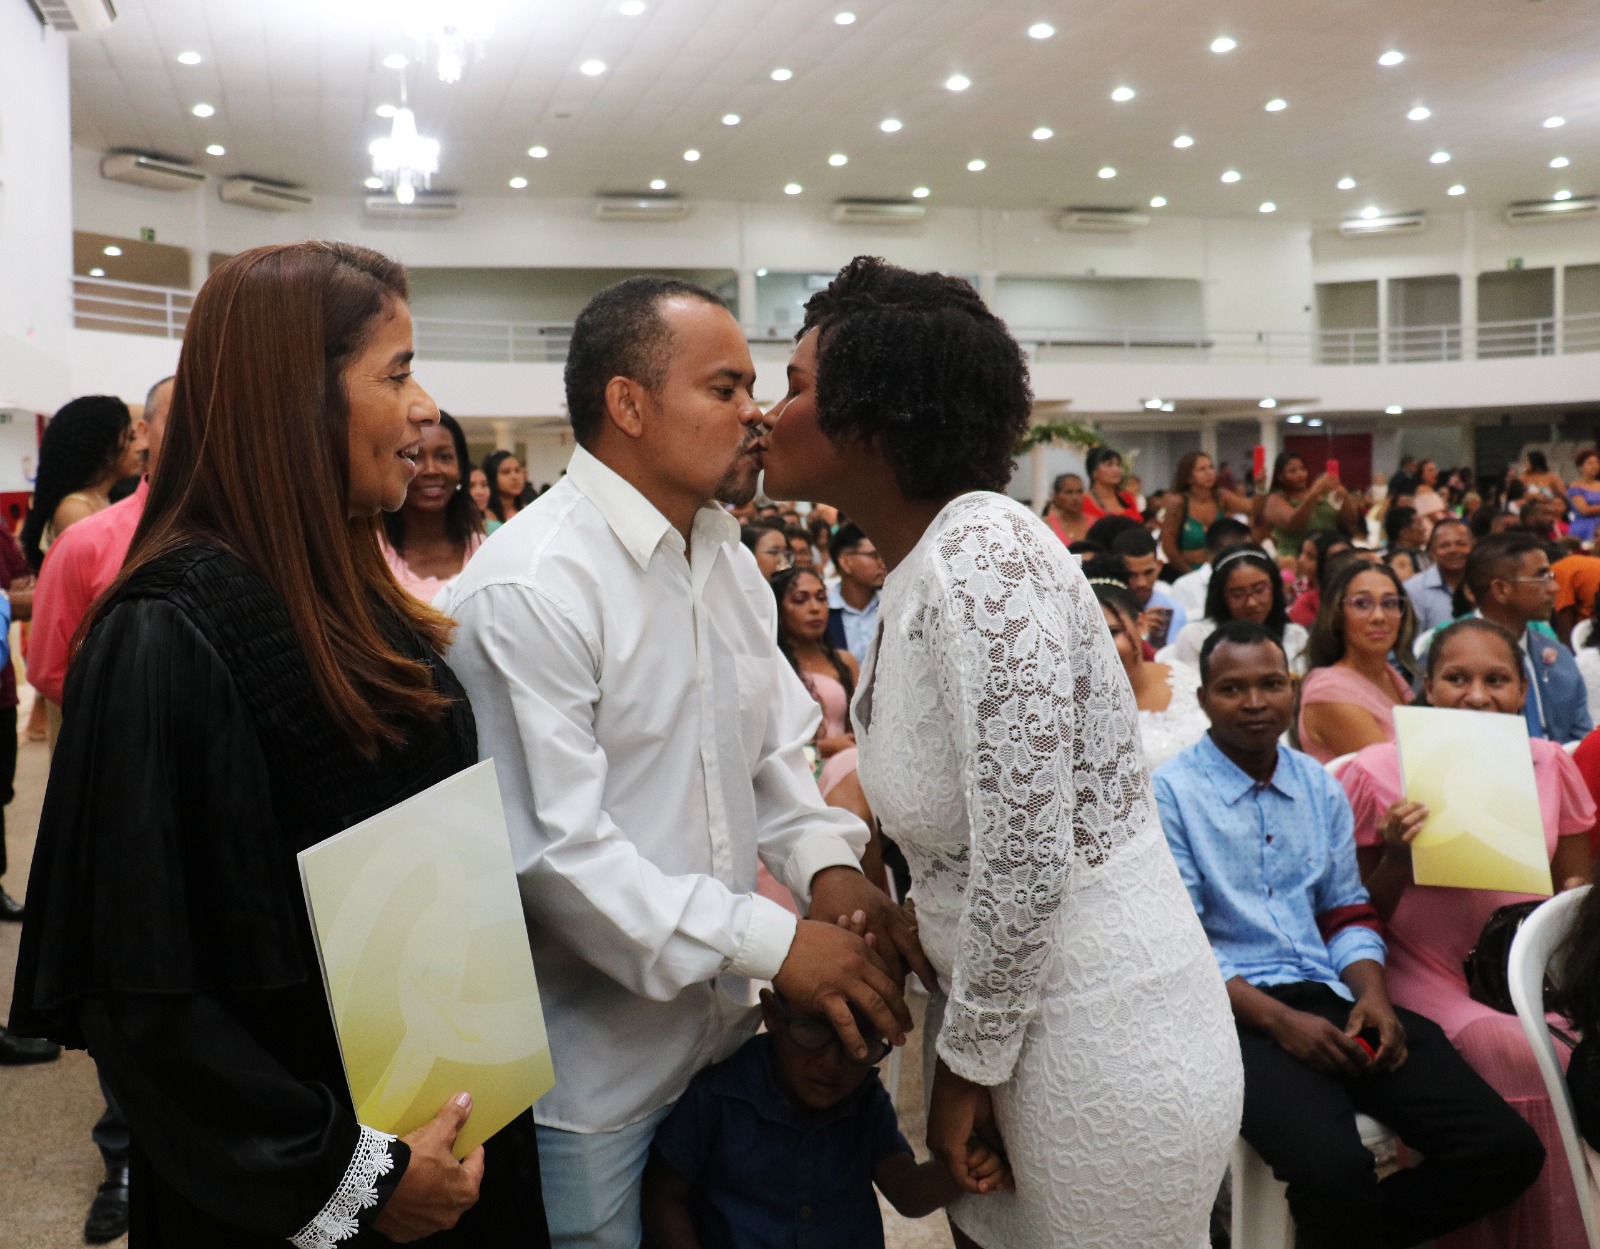 Foto horizontal de mulher parda, sorri com pasta de papel na mão esquerda, para casal de homem e mulher negros, que se beijam. Ao fundo, pessoas sentadas em auditório.